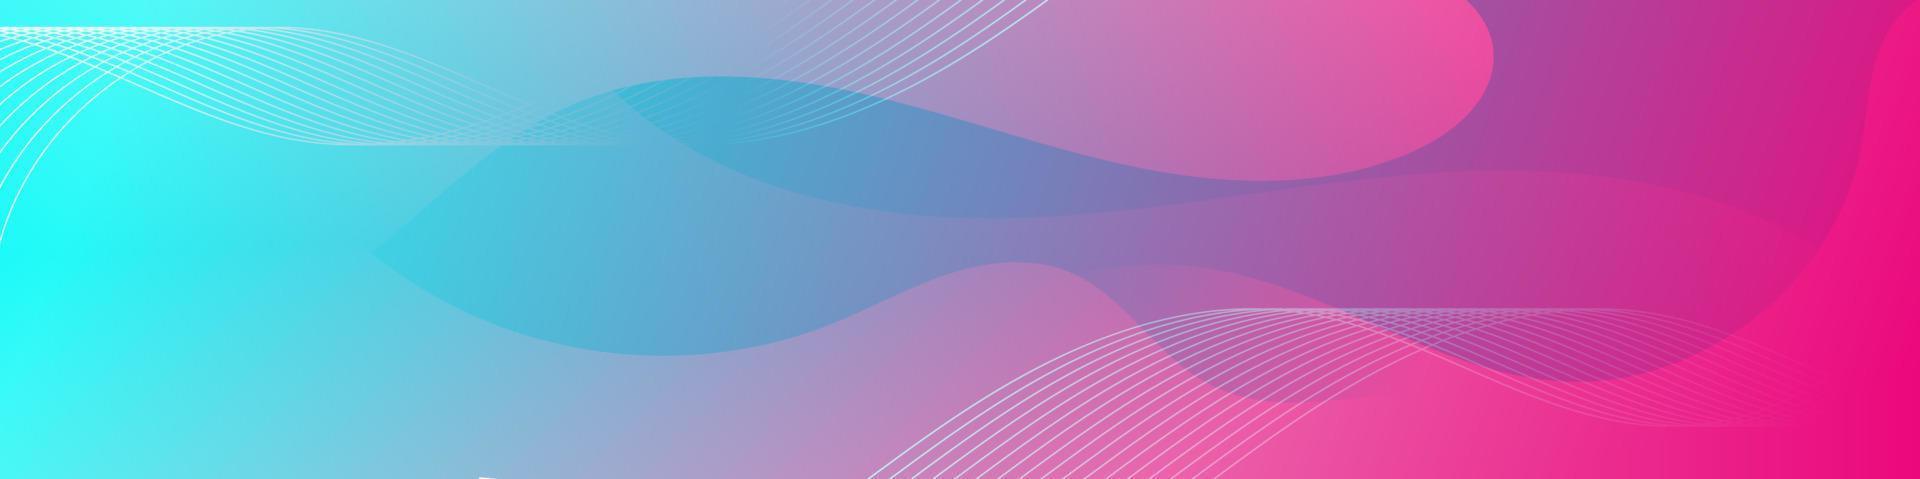 modèle de bannière abstraite vague fluide rose et bleu vecteur